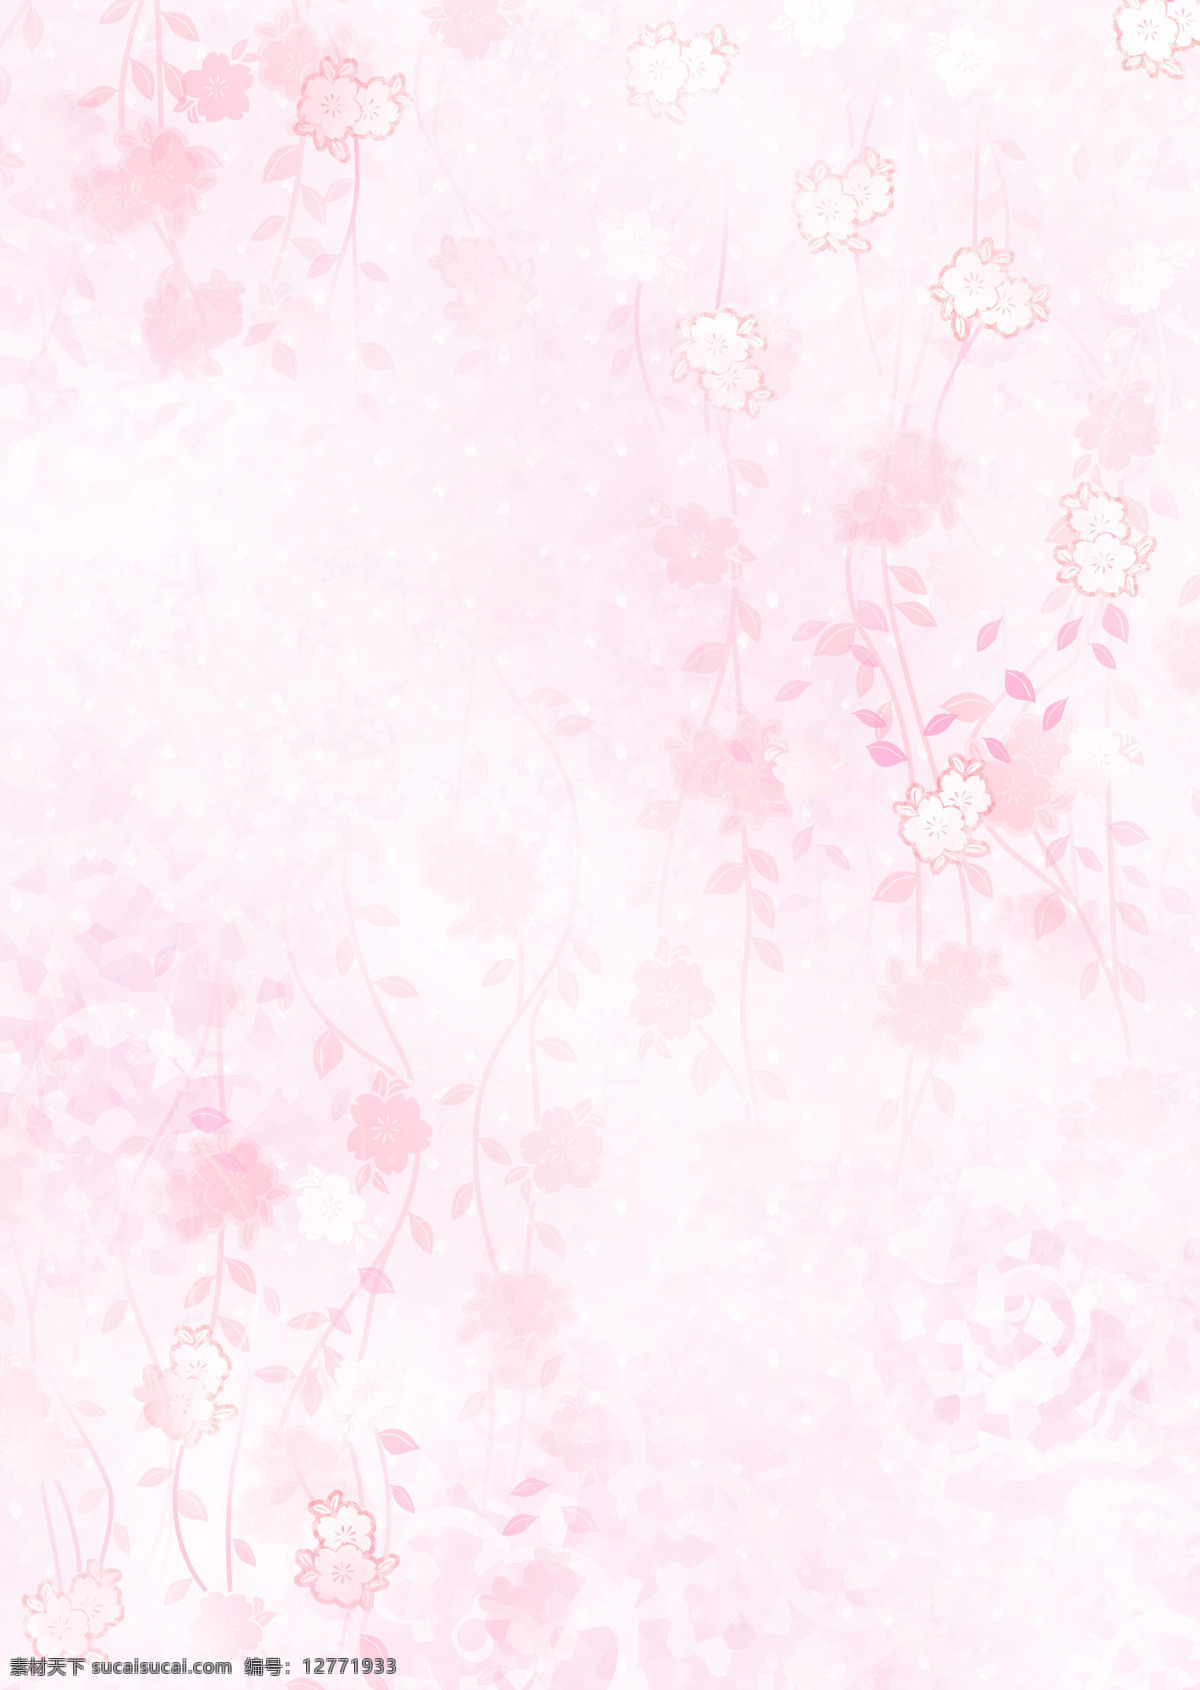 日本 风格 中 色彩 连枝樱花 花瓣 浪漫花纹 粉色梦幻 底纹边框 背景底纹 设计图库